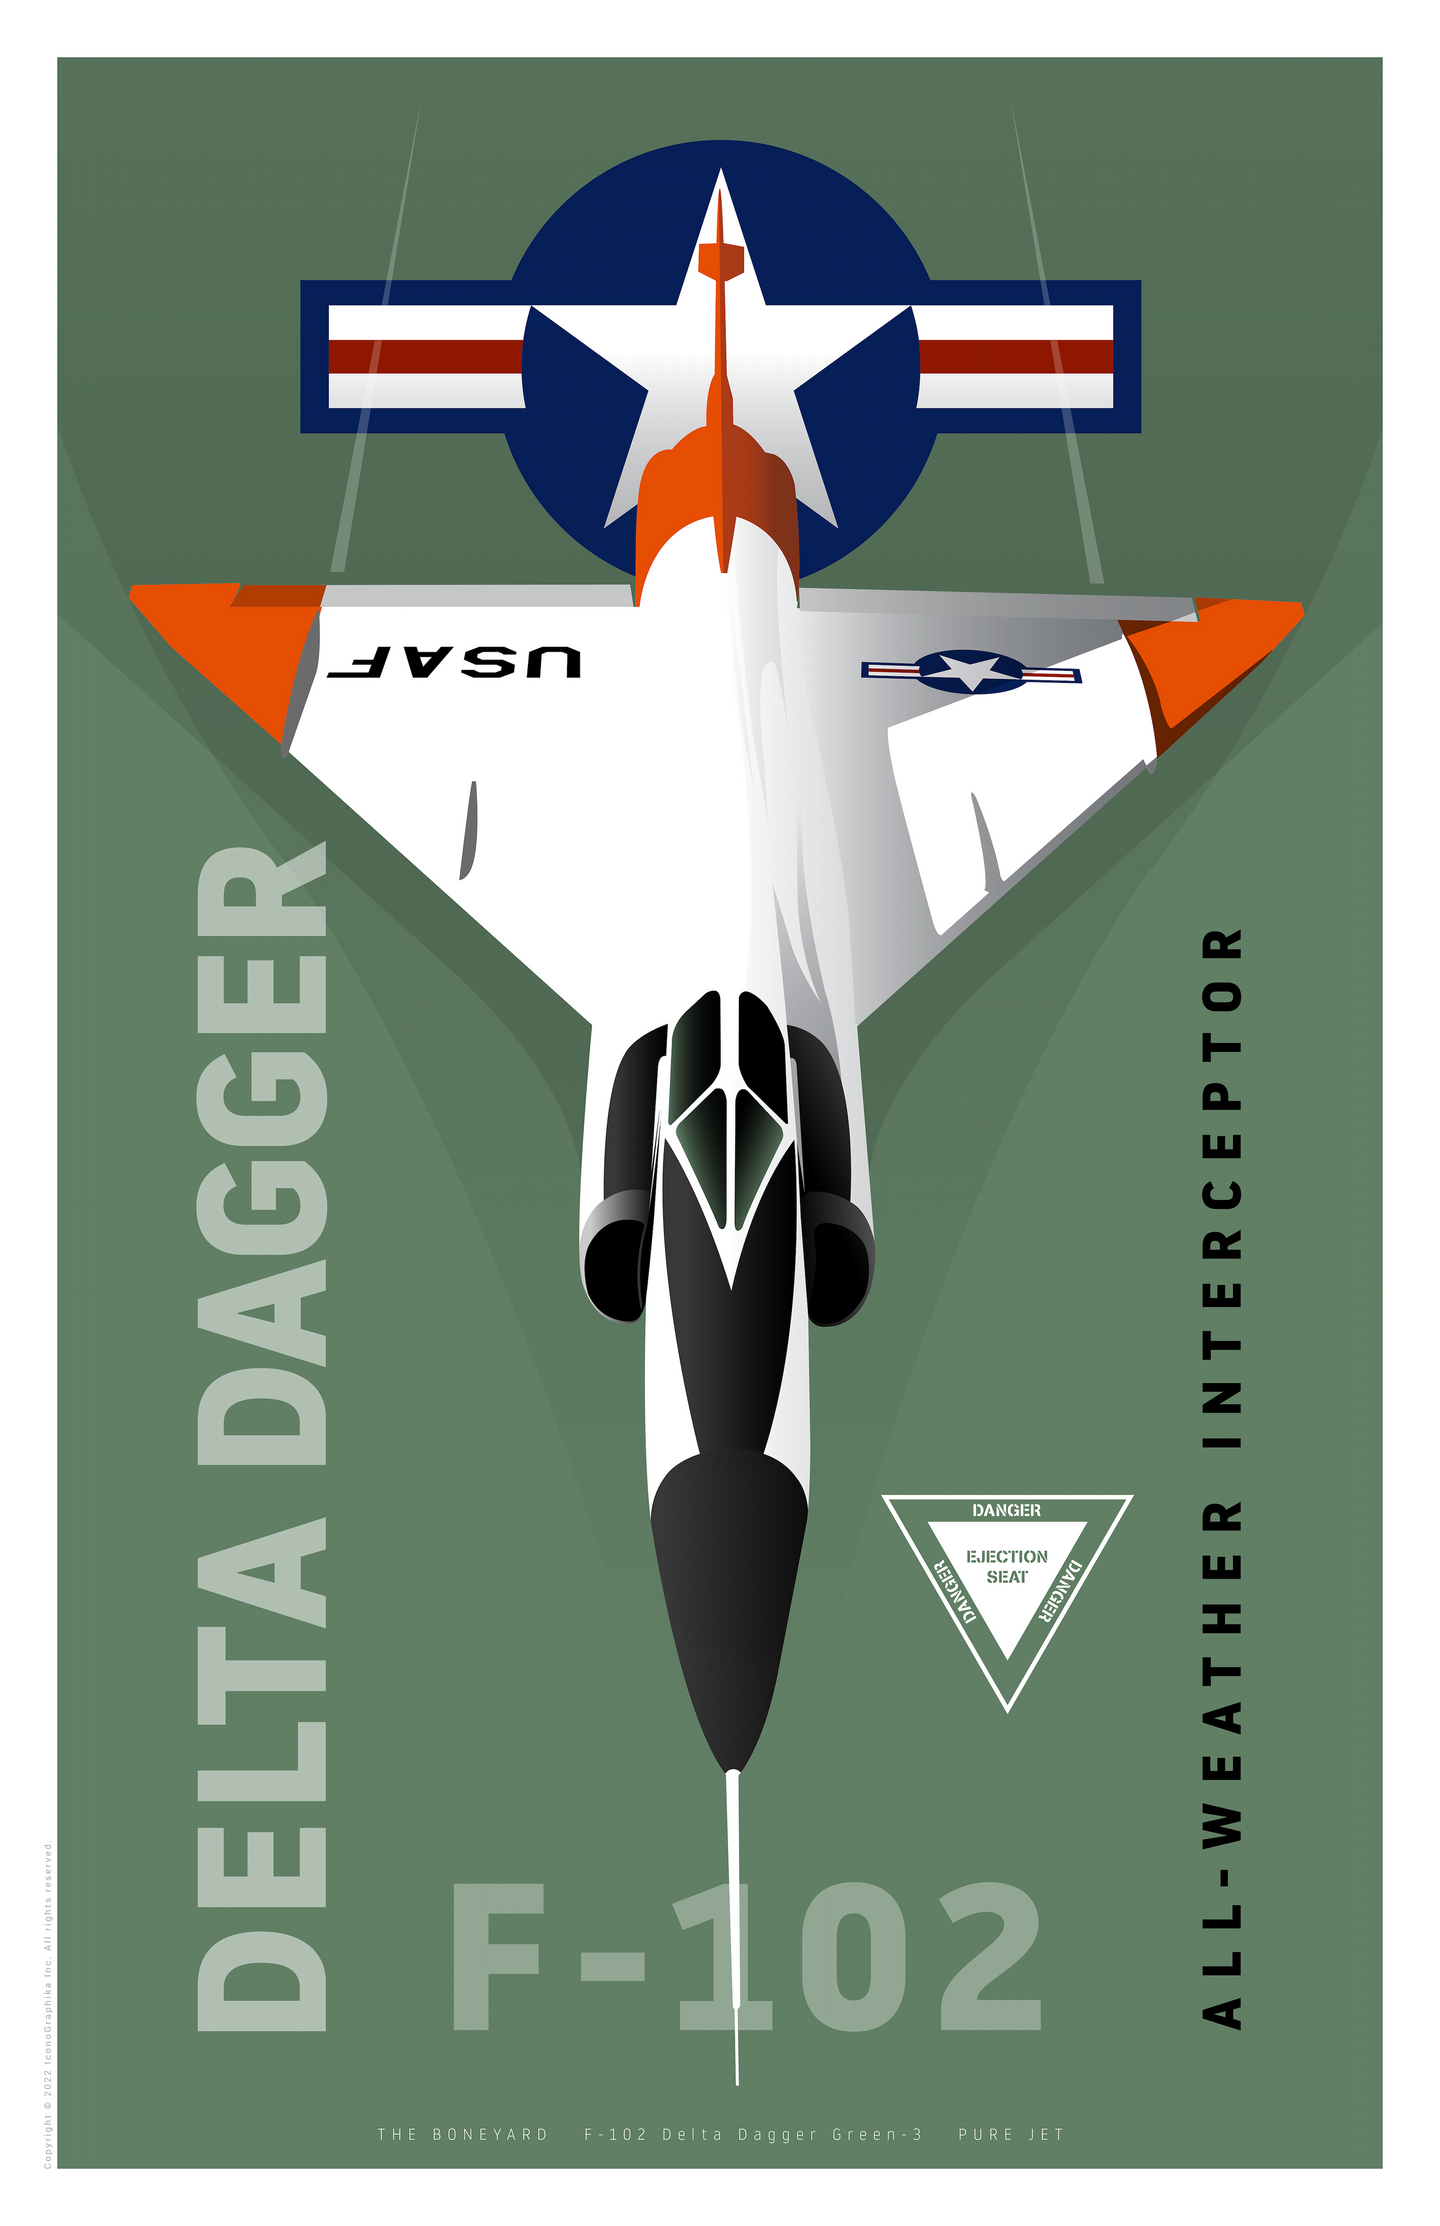 F-102 Delta Dagger - Pure Jet